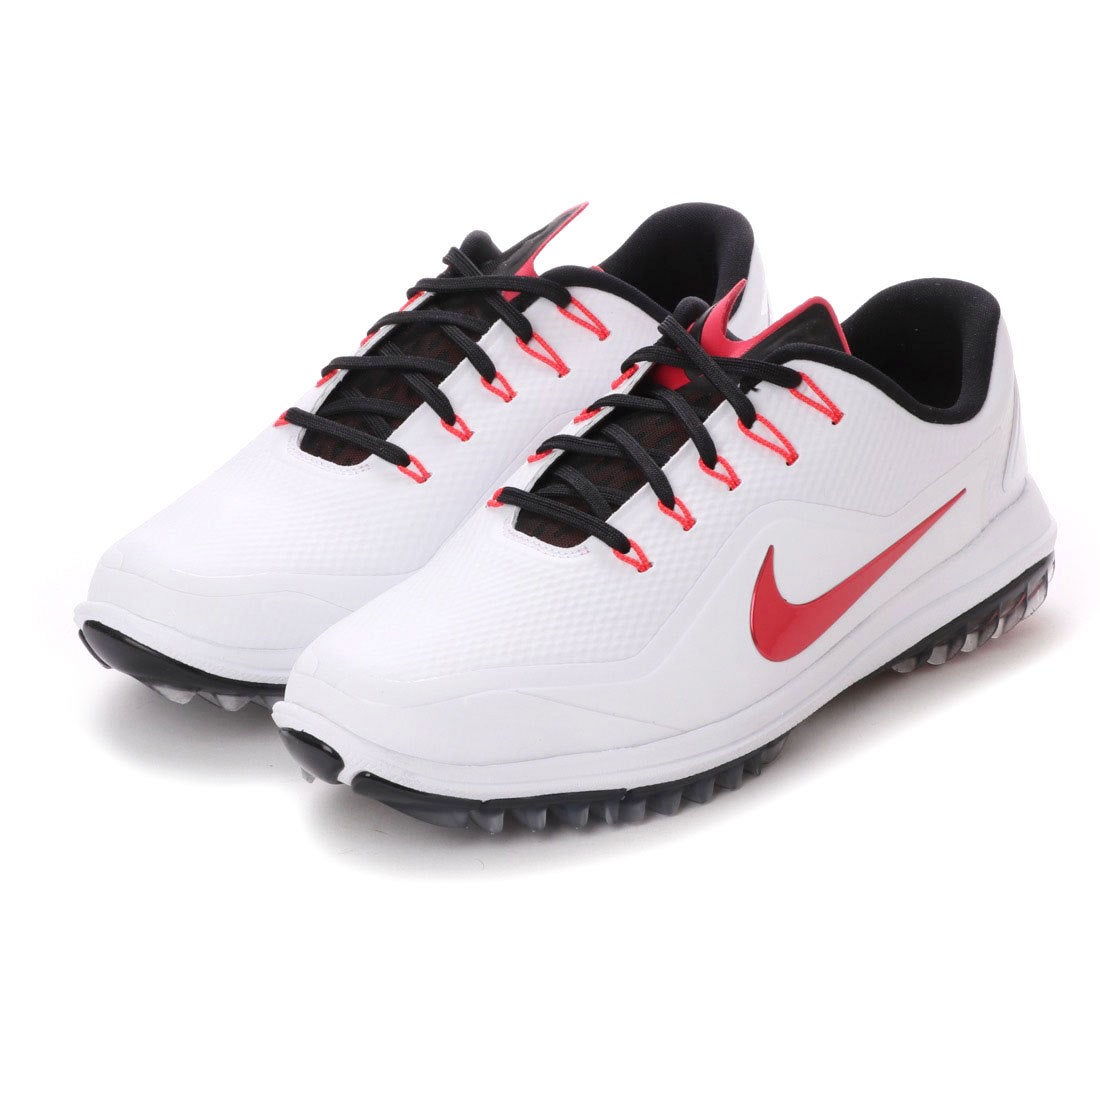 ナイキ Nike メンズ ゴルフ シューレース式スパイクレスシューズ メンズ ルナ コントロール ヴェイパー 2 965 靴 ファッション通販 ロコンド 自宅で試着 気軽に返品